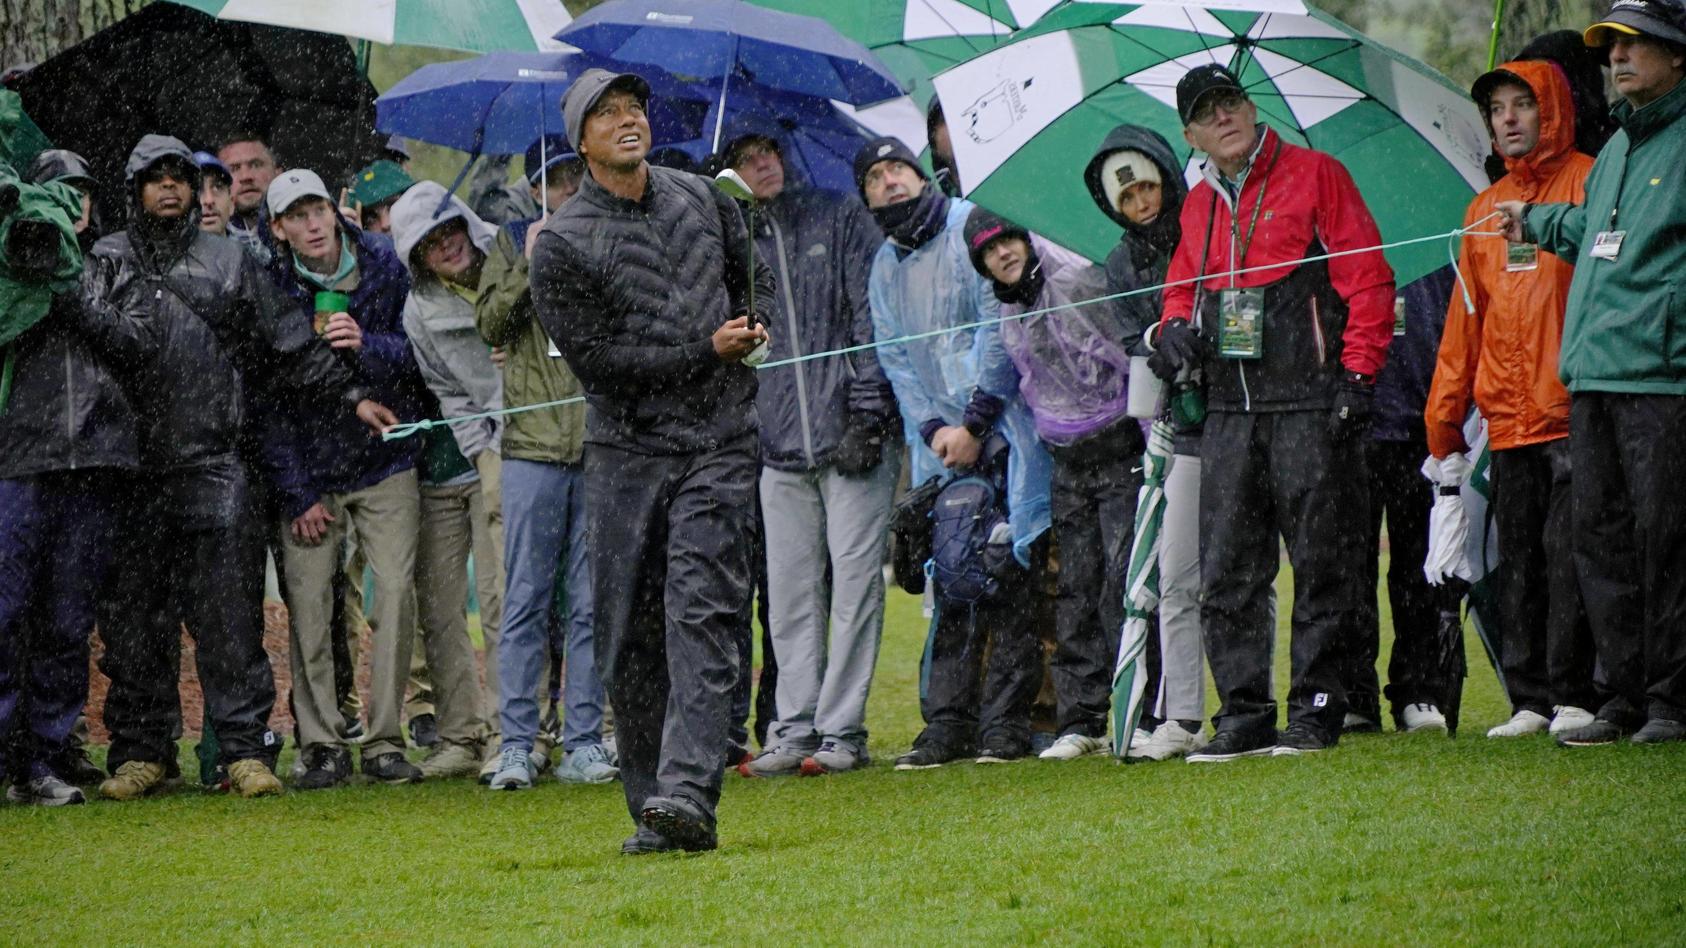 Tiger Woods Humpelnder Golf-Star muss Masters in Augusta aufgeben